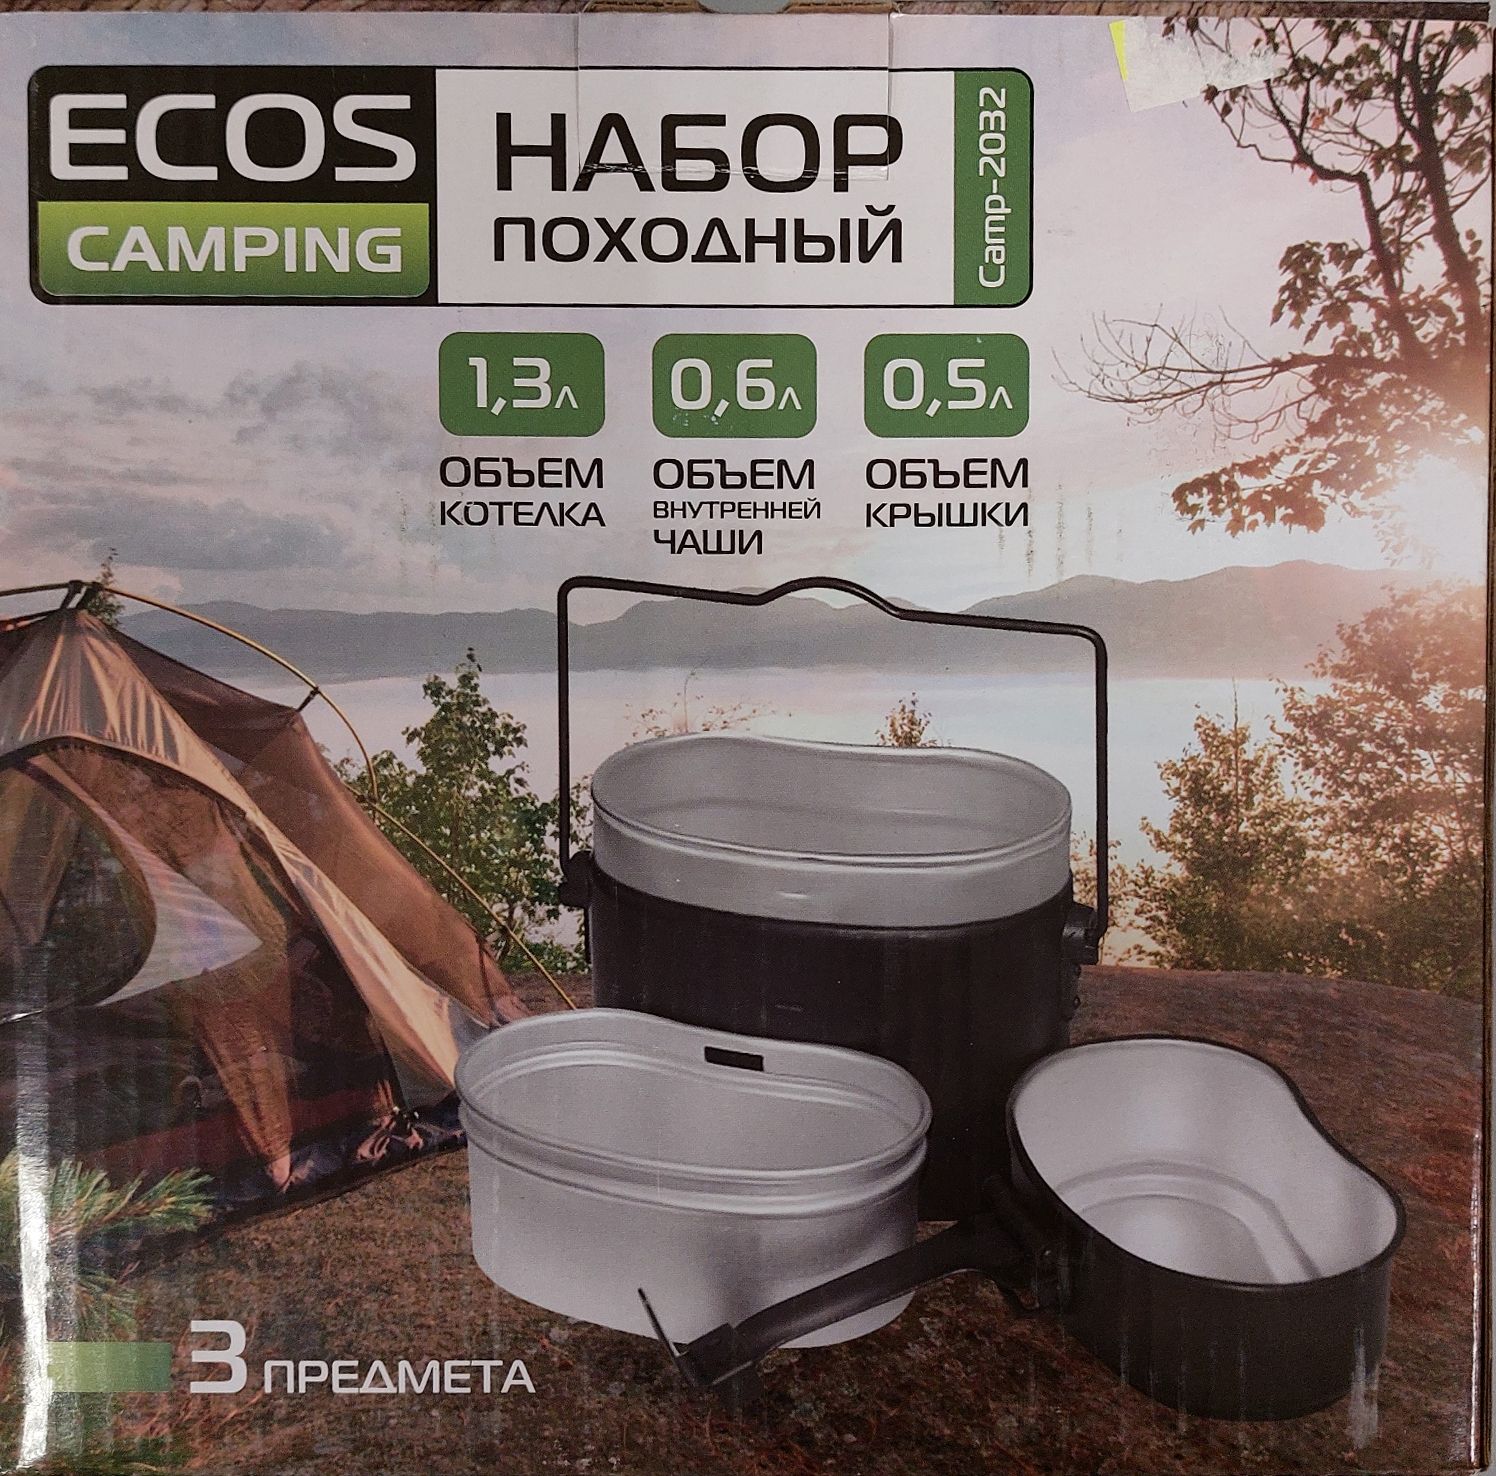 Ecos camping. Котелок походный Экос. Набор туристической посуды Ecos Camp-s2, 3 шт.. Походный набор Ecos Camp-2032.